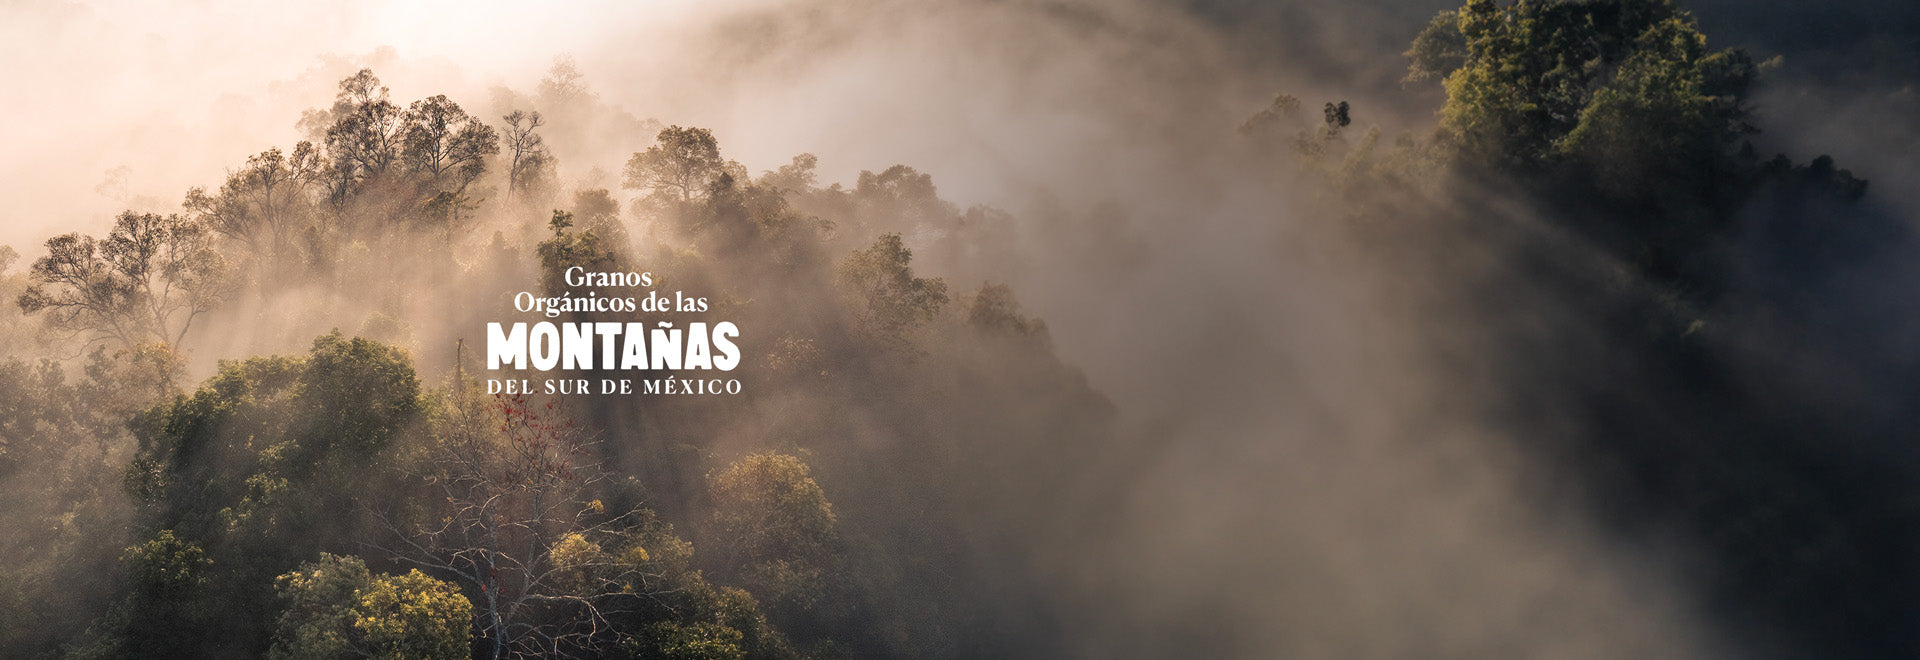 Granos de Café de las Montañas del Sur de México